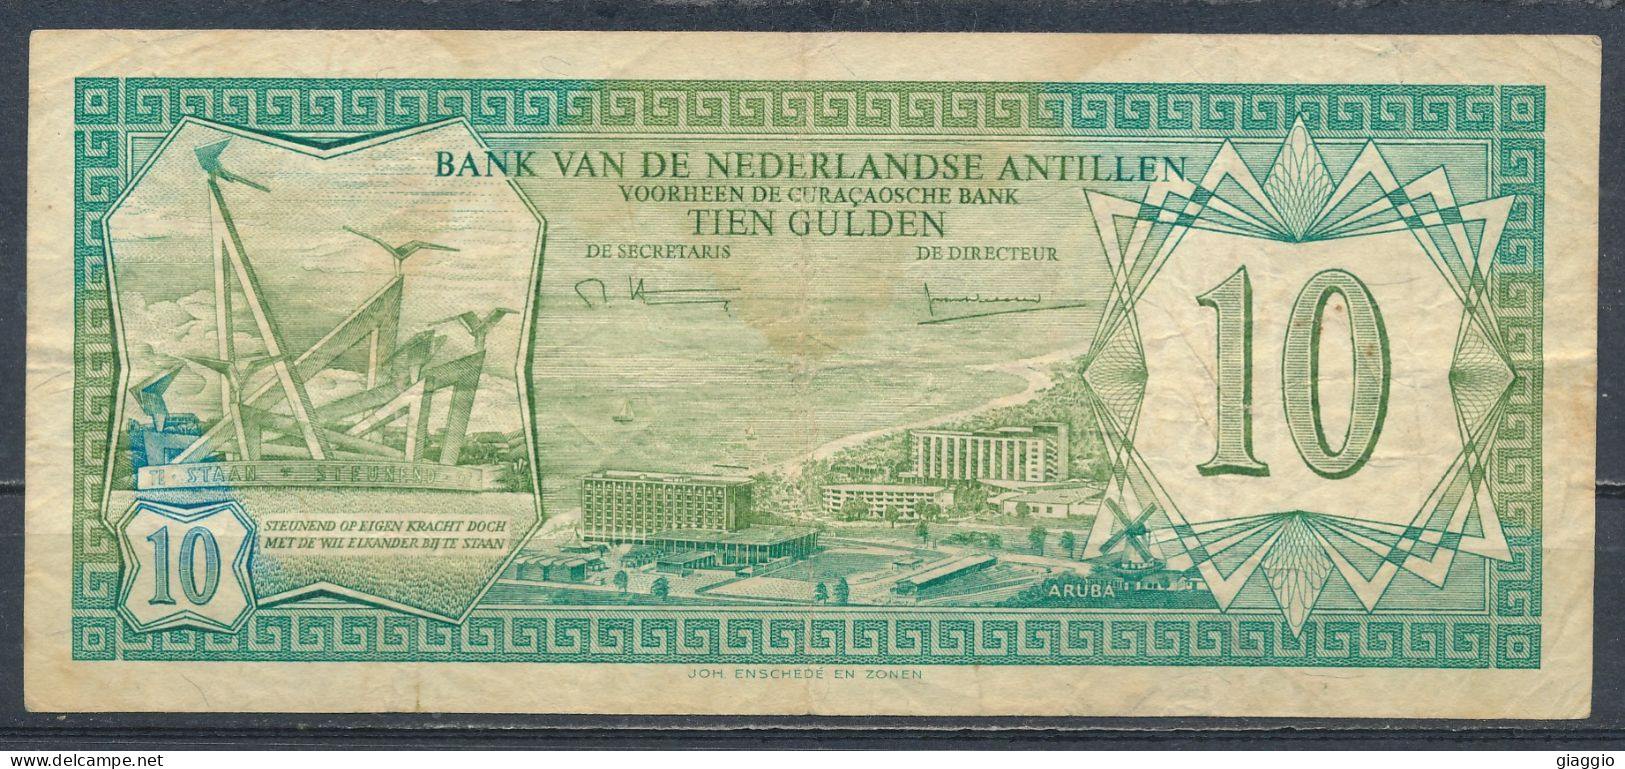 °°° NEDERLANDSE ANTILLEN 10 GULDEN 1979 °°° - Niederländische Antillen (...-1986)